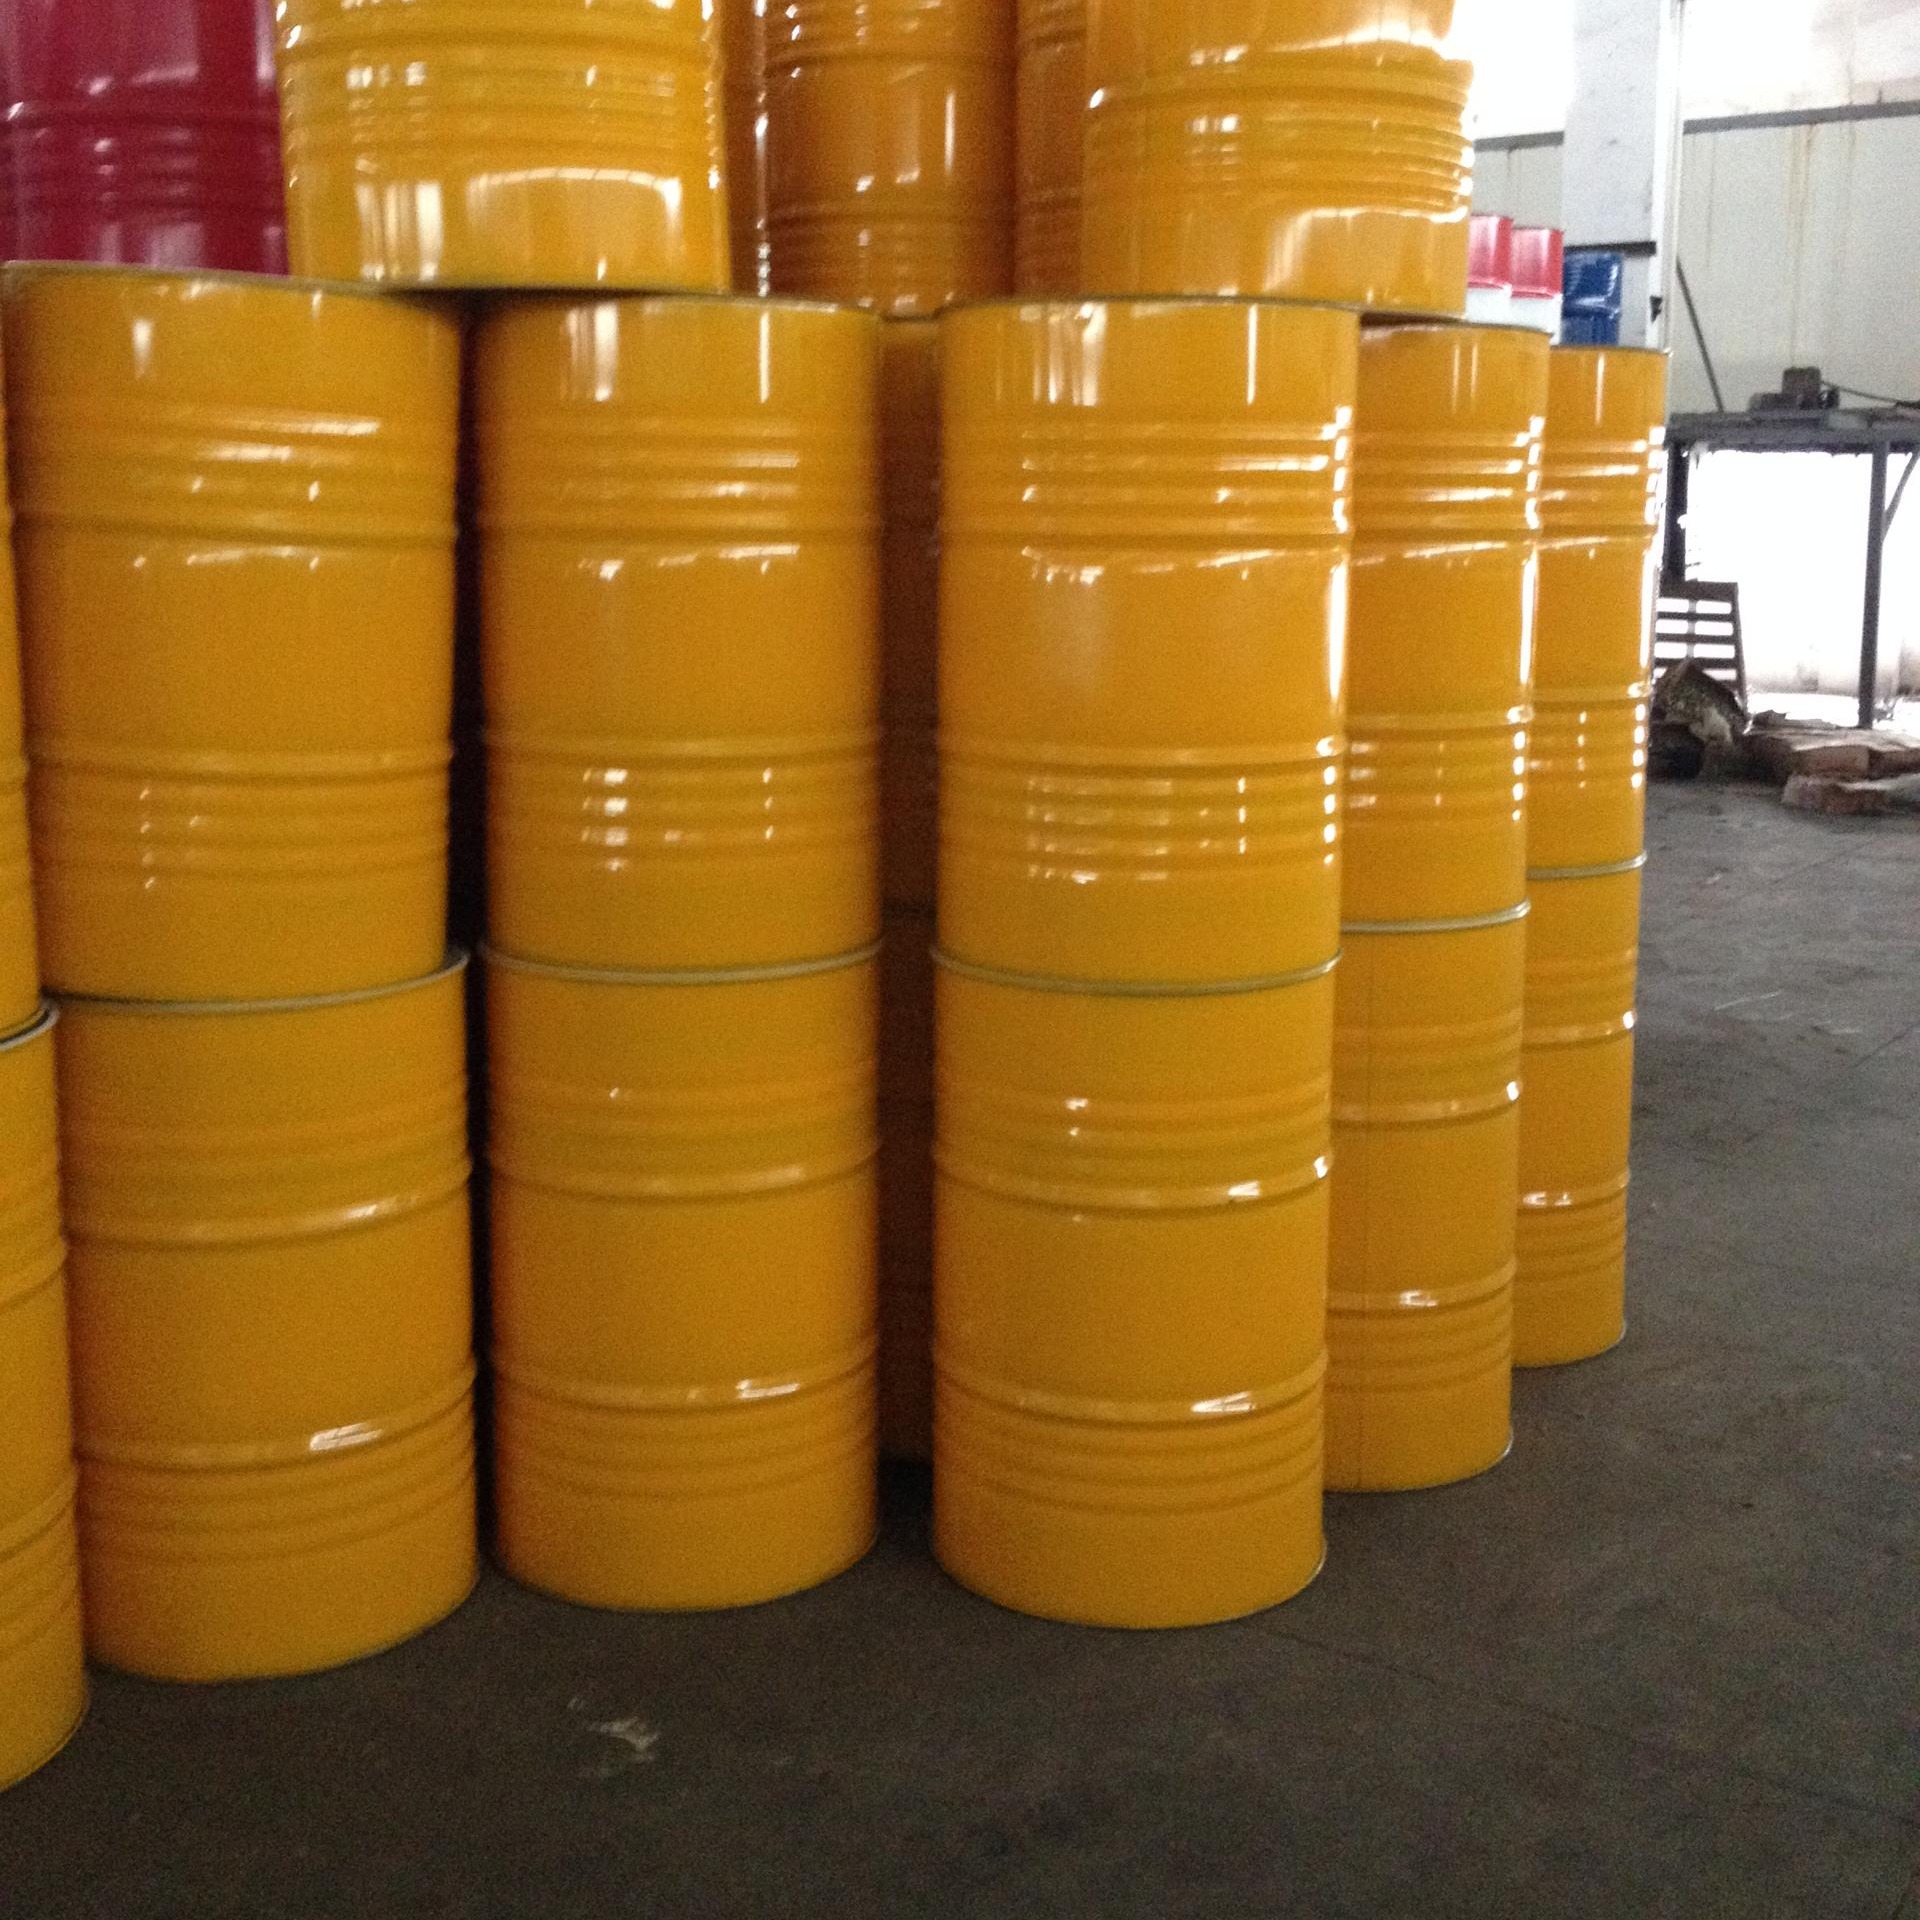 二手油桶翻新加工回收 莞兴200升二手翻新铁桶 200L铁桶回收 铁桶价格